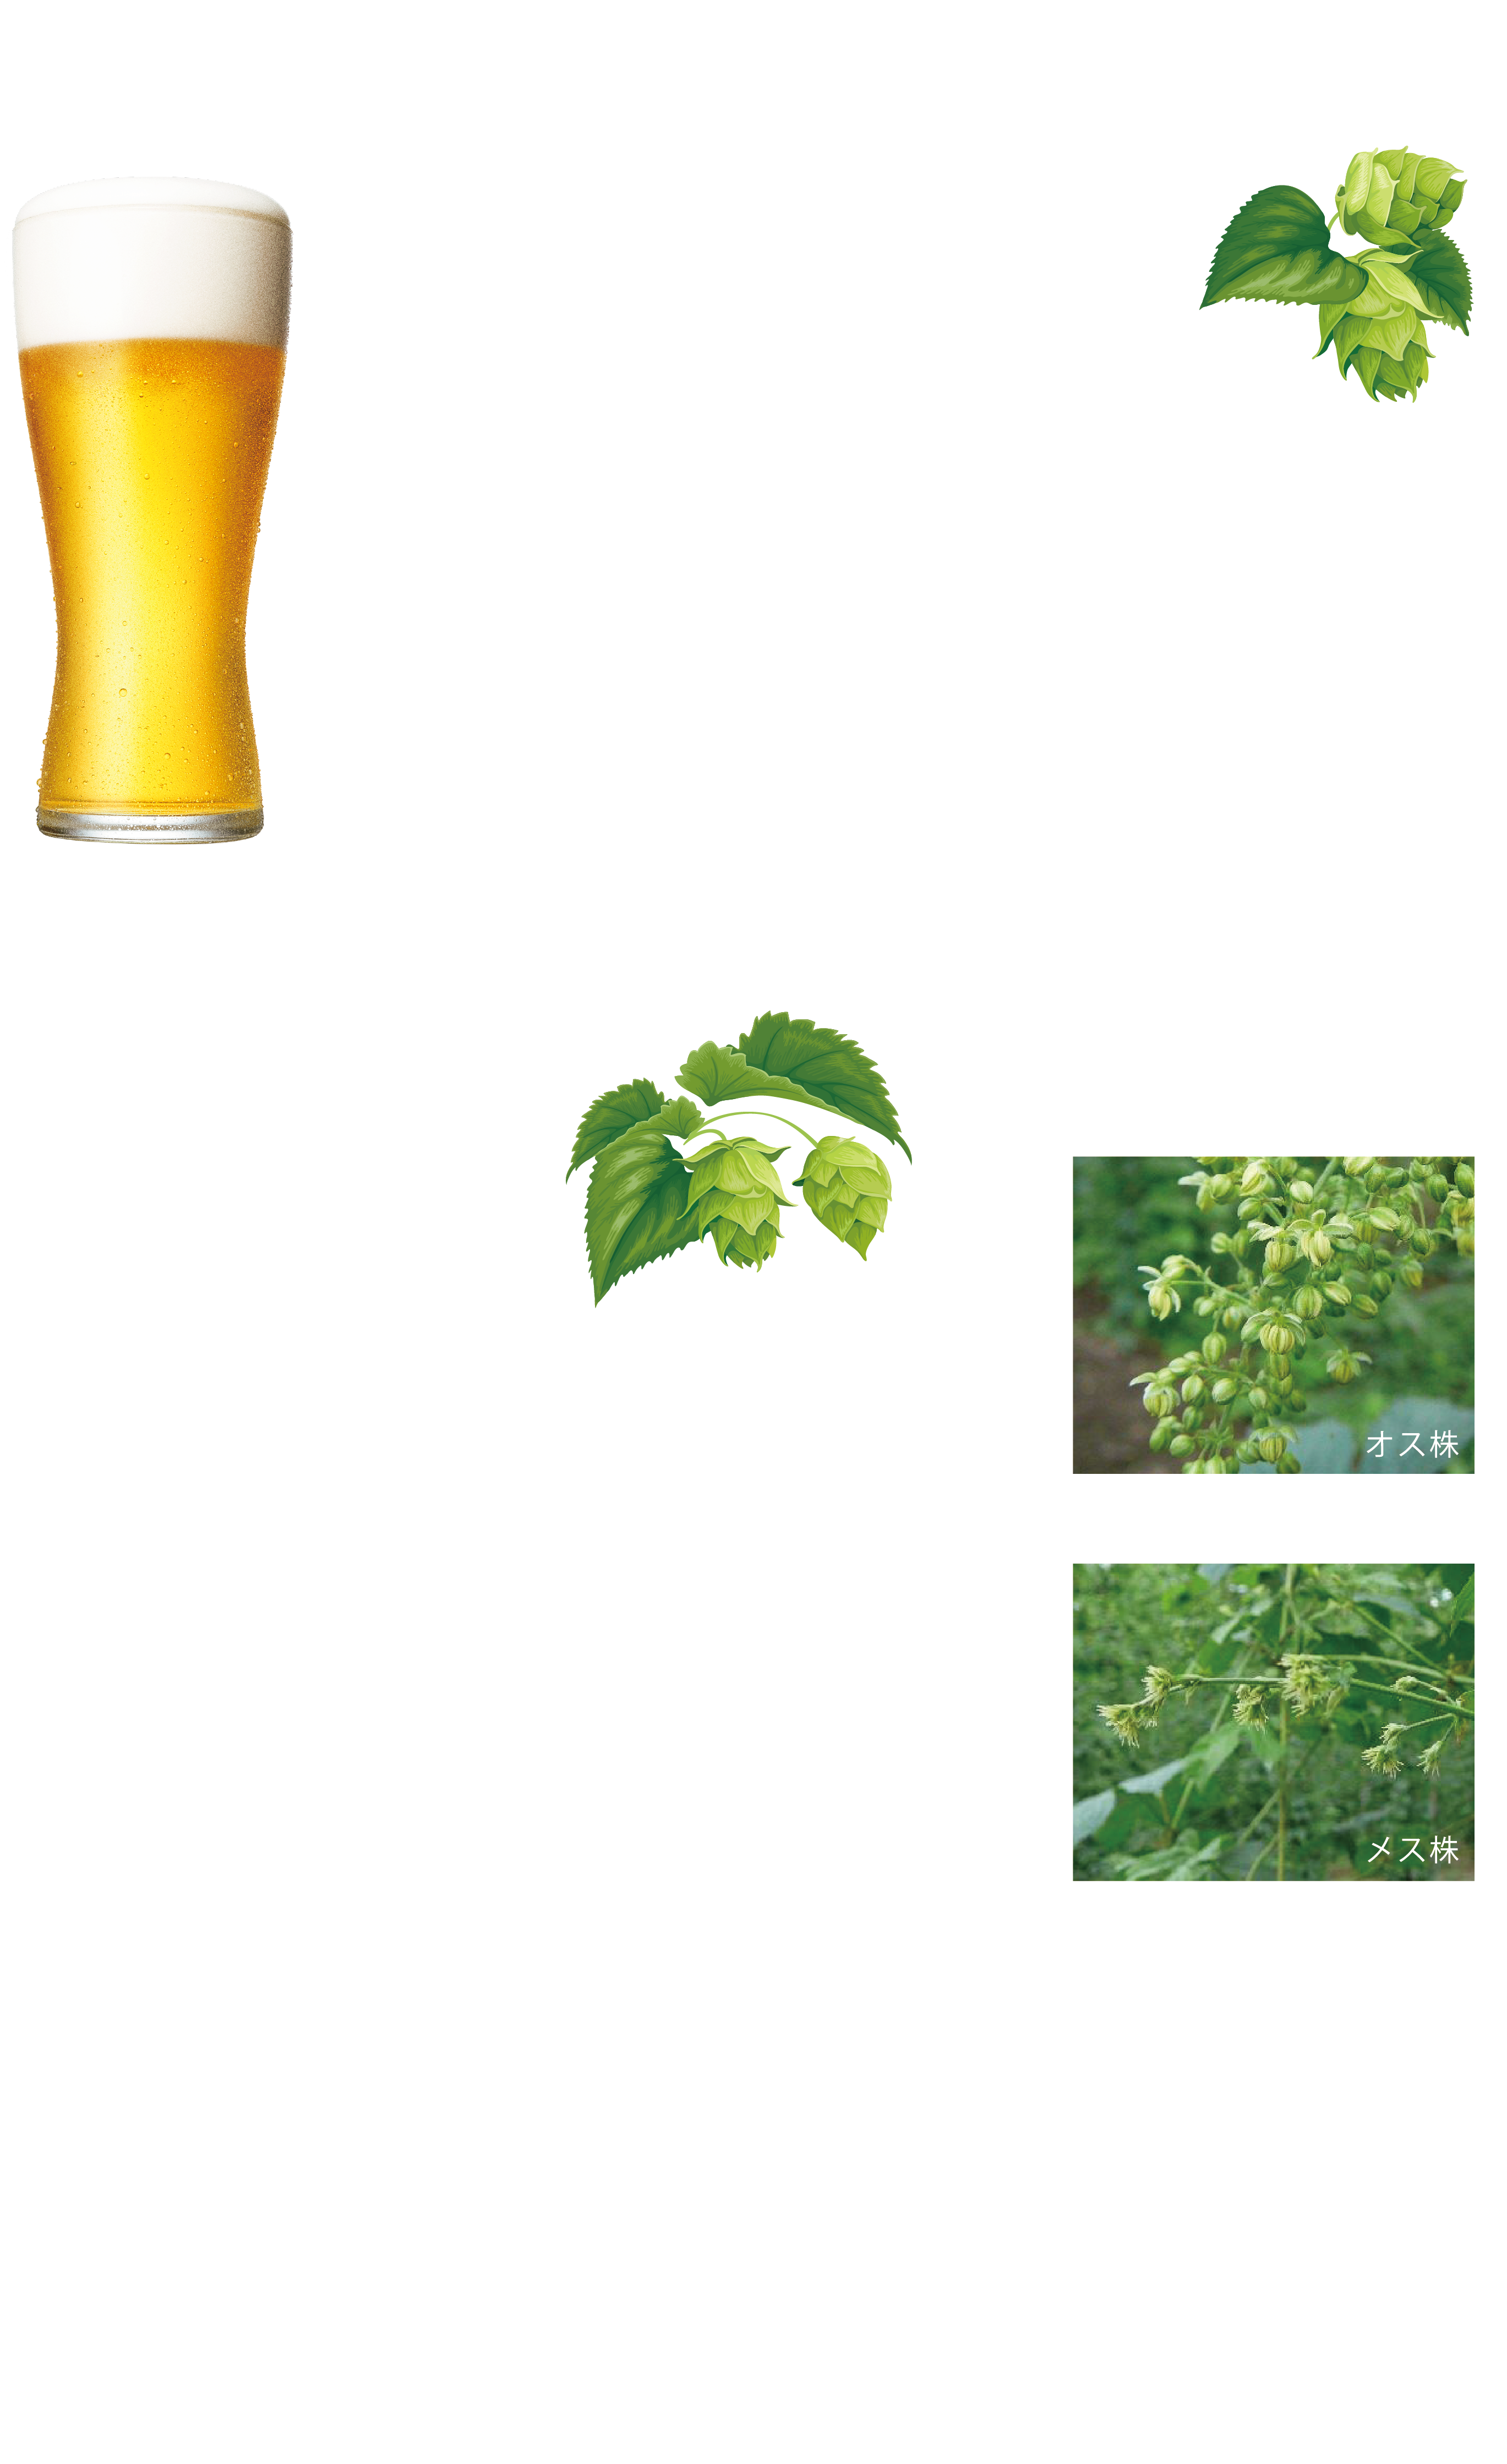 国産ホップで、ビールにもっとワクワクを。ホップの試験栽培が上富良野で始まって100年、それに続いて東北でもホップ栽培が広がるとともに、上富良野は北海道のホップ栽培の中心となっていきました。日本のビール文化、ビール産業を長きにわたって支えてきた国産ホップ。そのおいしさを未来へと繋げるための、新たな挑戦です。国産ホップの知られざる物語と、そのおいしさ、魅力を楽しめる「NIPPON HOP」シリーズ。「始まりのホップ 信州早生」をスタートに、様々な個性的なホップが続々登場。ホップとは？ビールに苦味と香りを与える、ビールにとってなくてはならない大切な原料。それがホップ。ほぼビール醸造のために生産されているホップは、アサ科の多年生つる植物で、オス株とメス株があります。ビールの原料として使うのは球花と呼ばれる雌株の果実だけになります。苦味はホップの樹脂に含まれるアルファ酸、香りはホップの精油（エッセンシャルオイル）からつくられます。この苦味と香りがそれぞれのホップによって違うので、どのホップを選び、どんな使い方をするかで、その特徴を活かしたビールが生まれるのです。今、ビールつくりにホップが注目されています。それは、ホップの選び方、使い方次第で創造するビールの味が無限に広がってゆくからです。ホップを知れば、ビールはもっと楽しくなる。